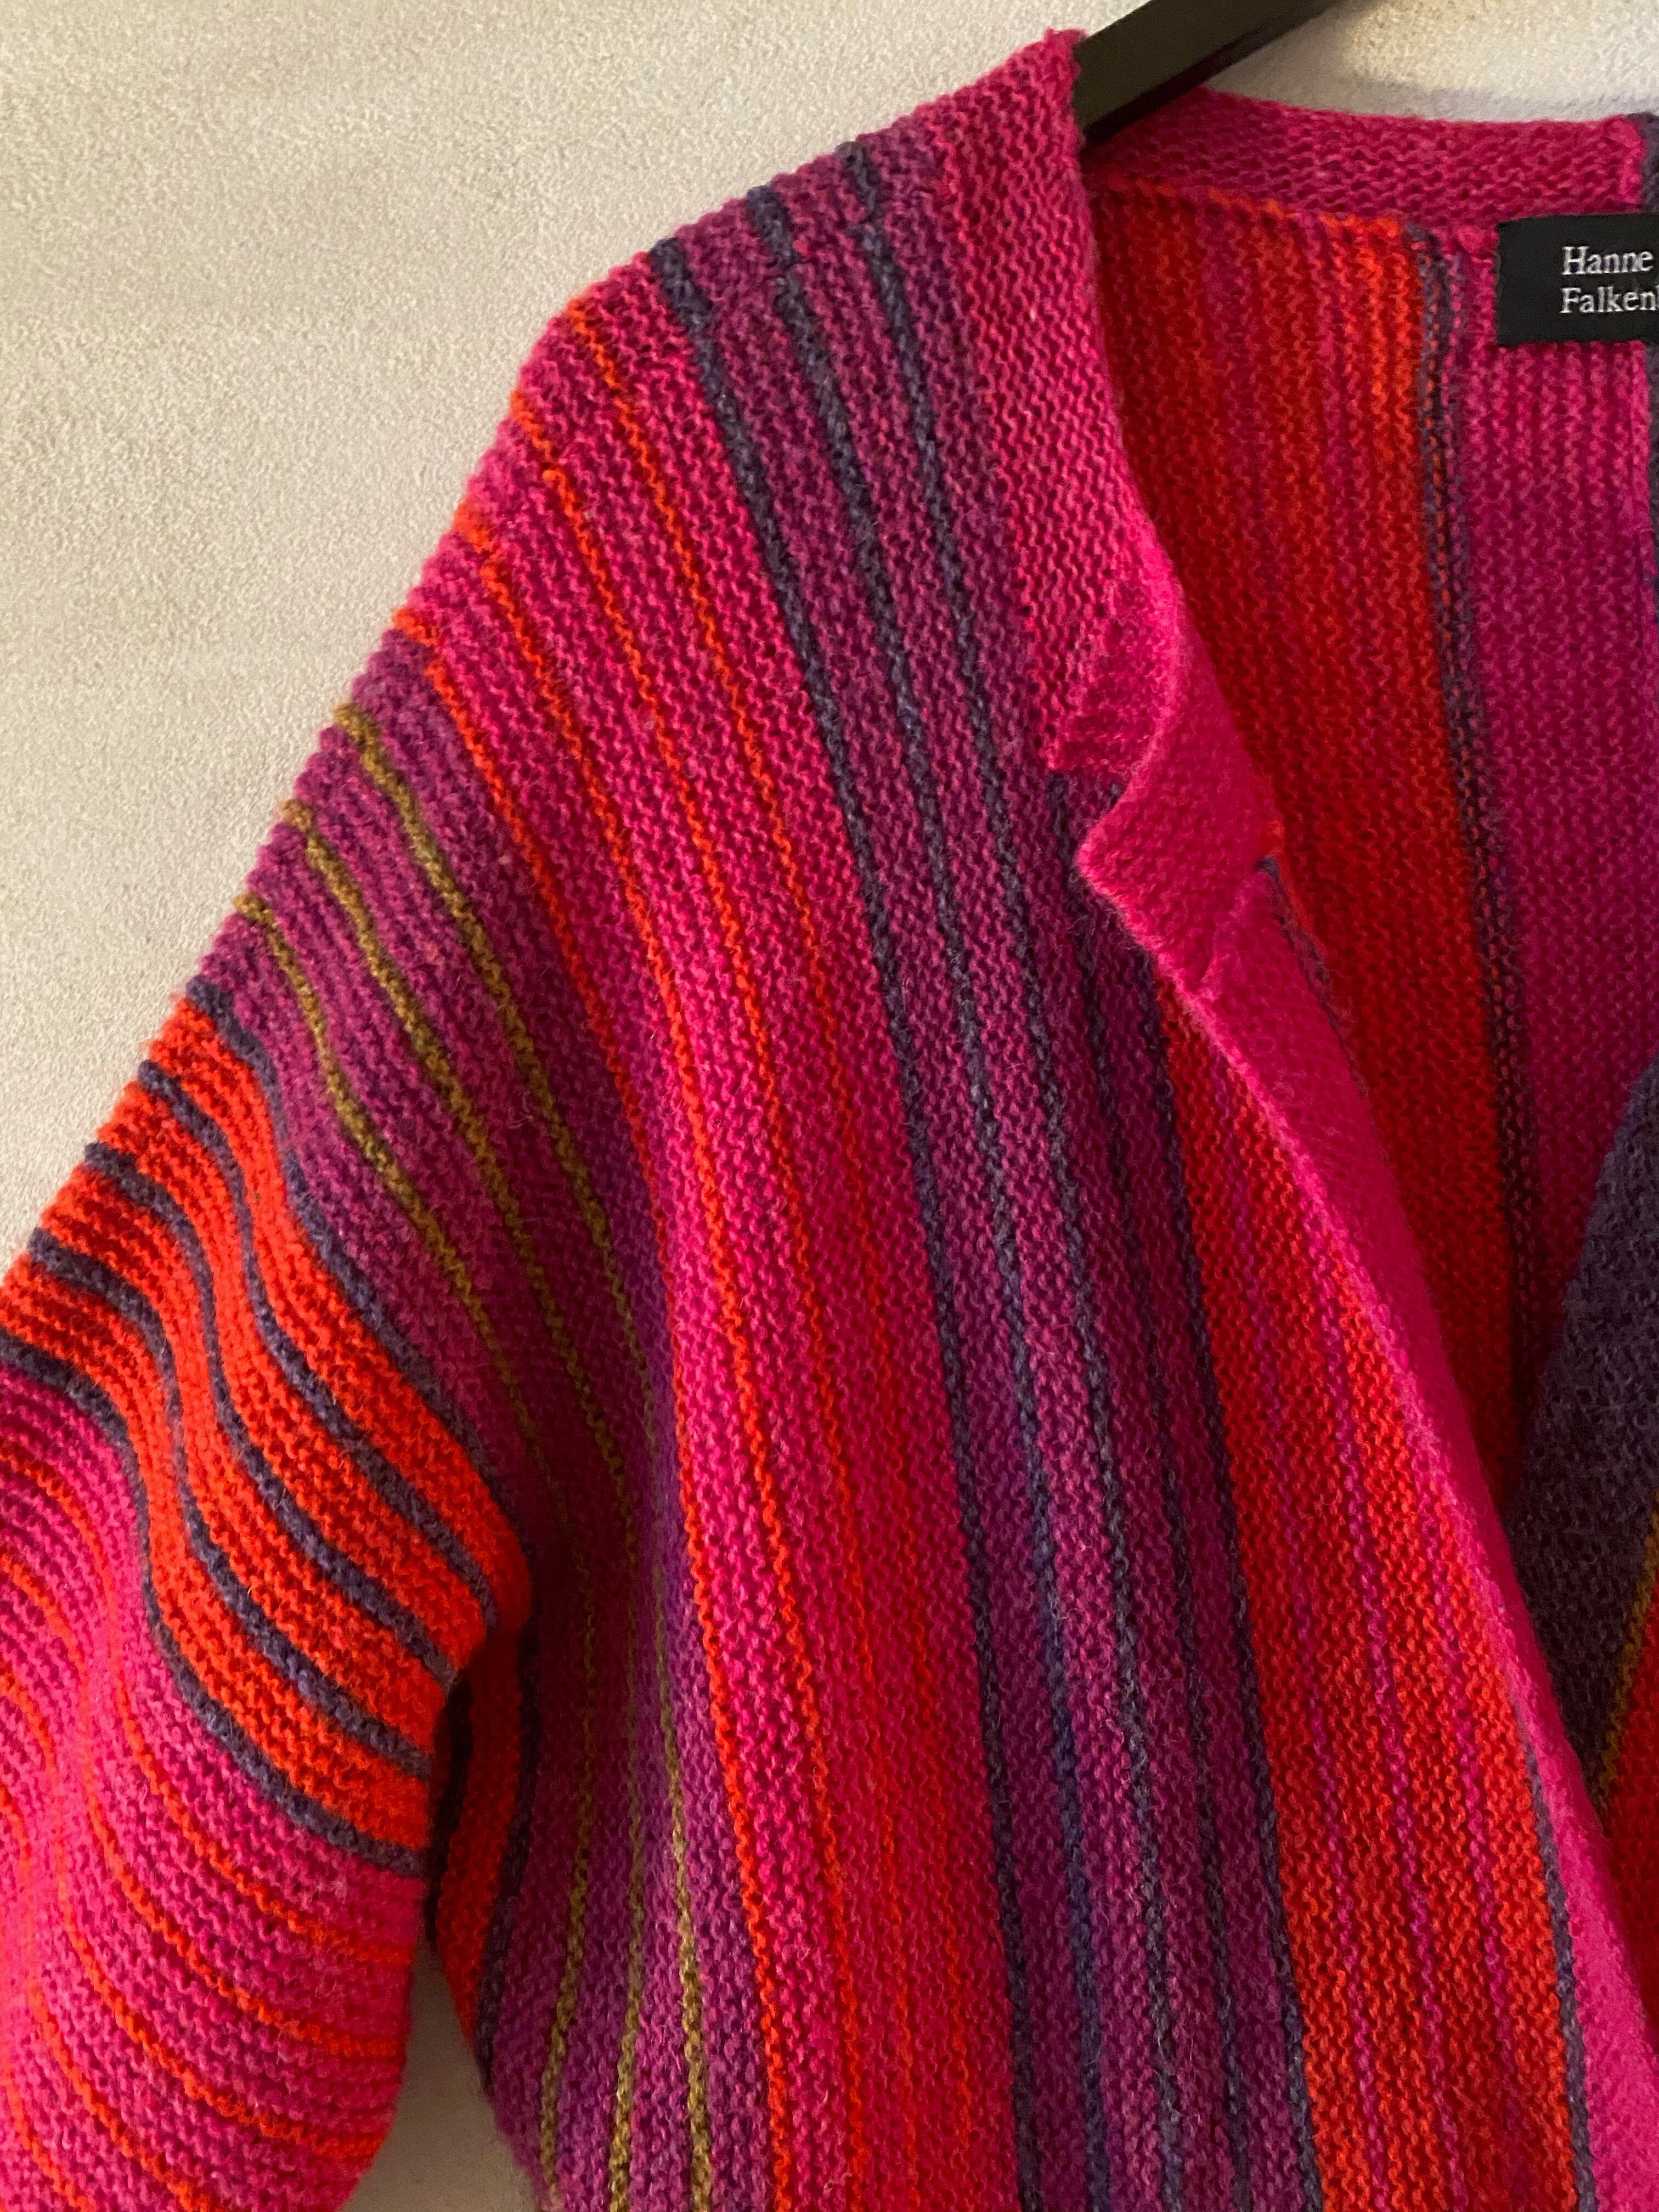 Lastrada trøje af Hanne Falkenberg, No 20 strikkekit (5 farver)